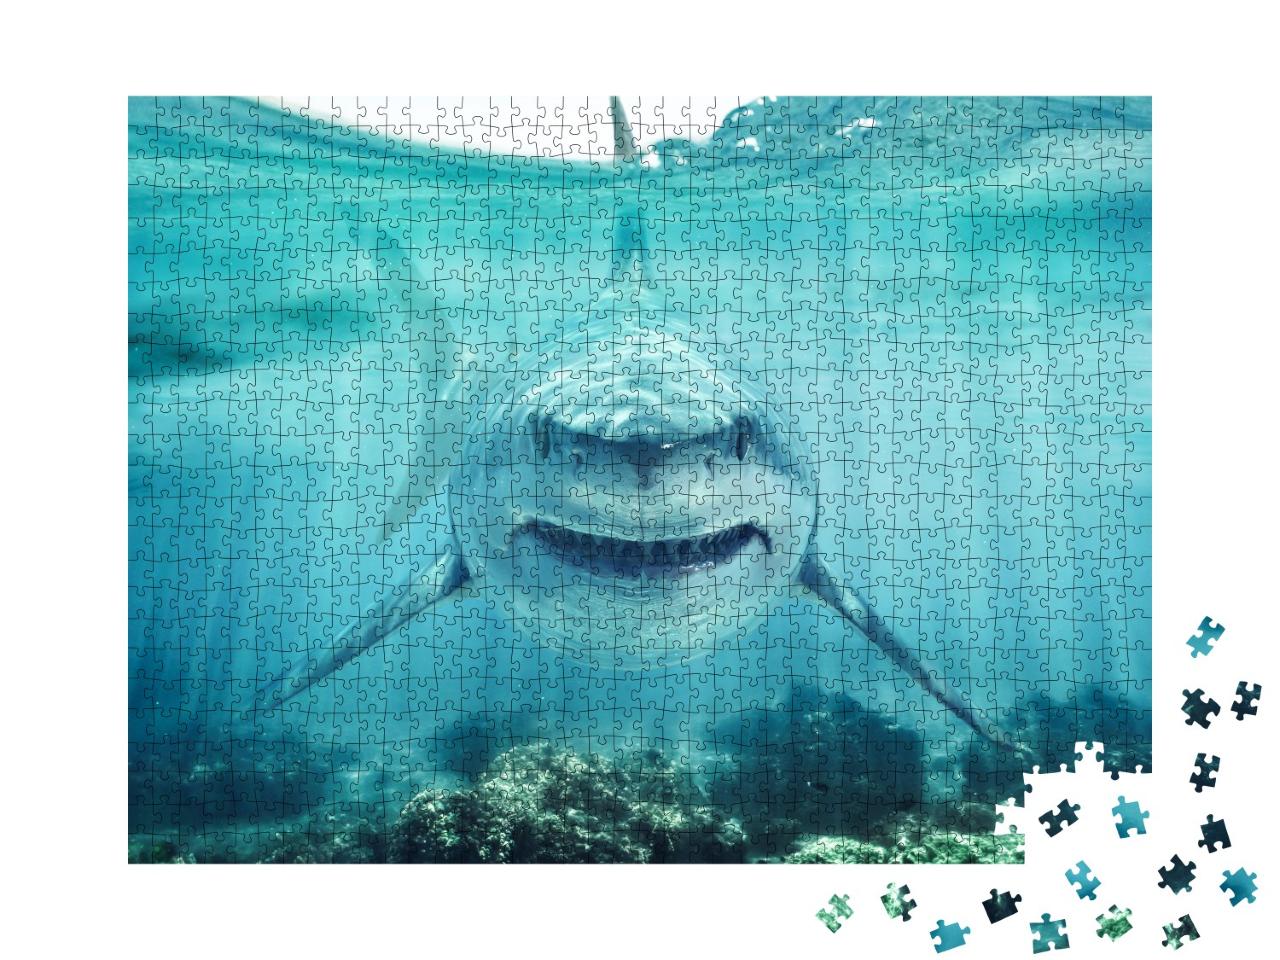 Puzzle de 1000 pièces « Face à face avec un grand requin blanc »